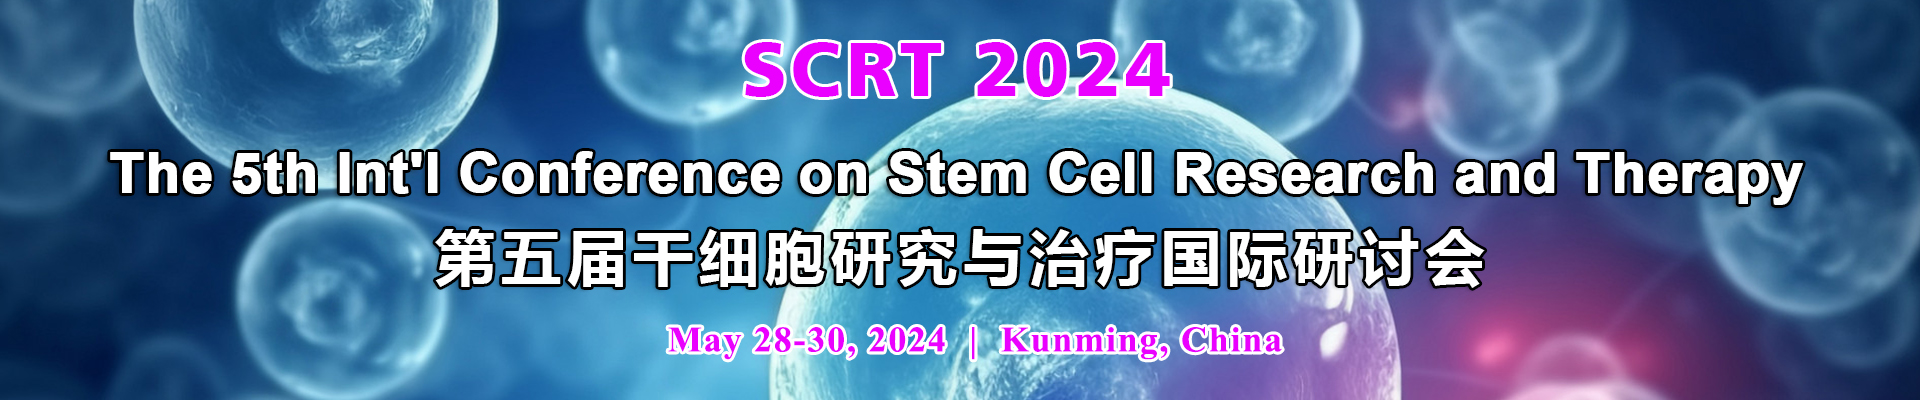 第五届干细胞研究与治疗国际研讨会(SCRT 2024)